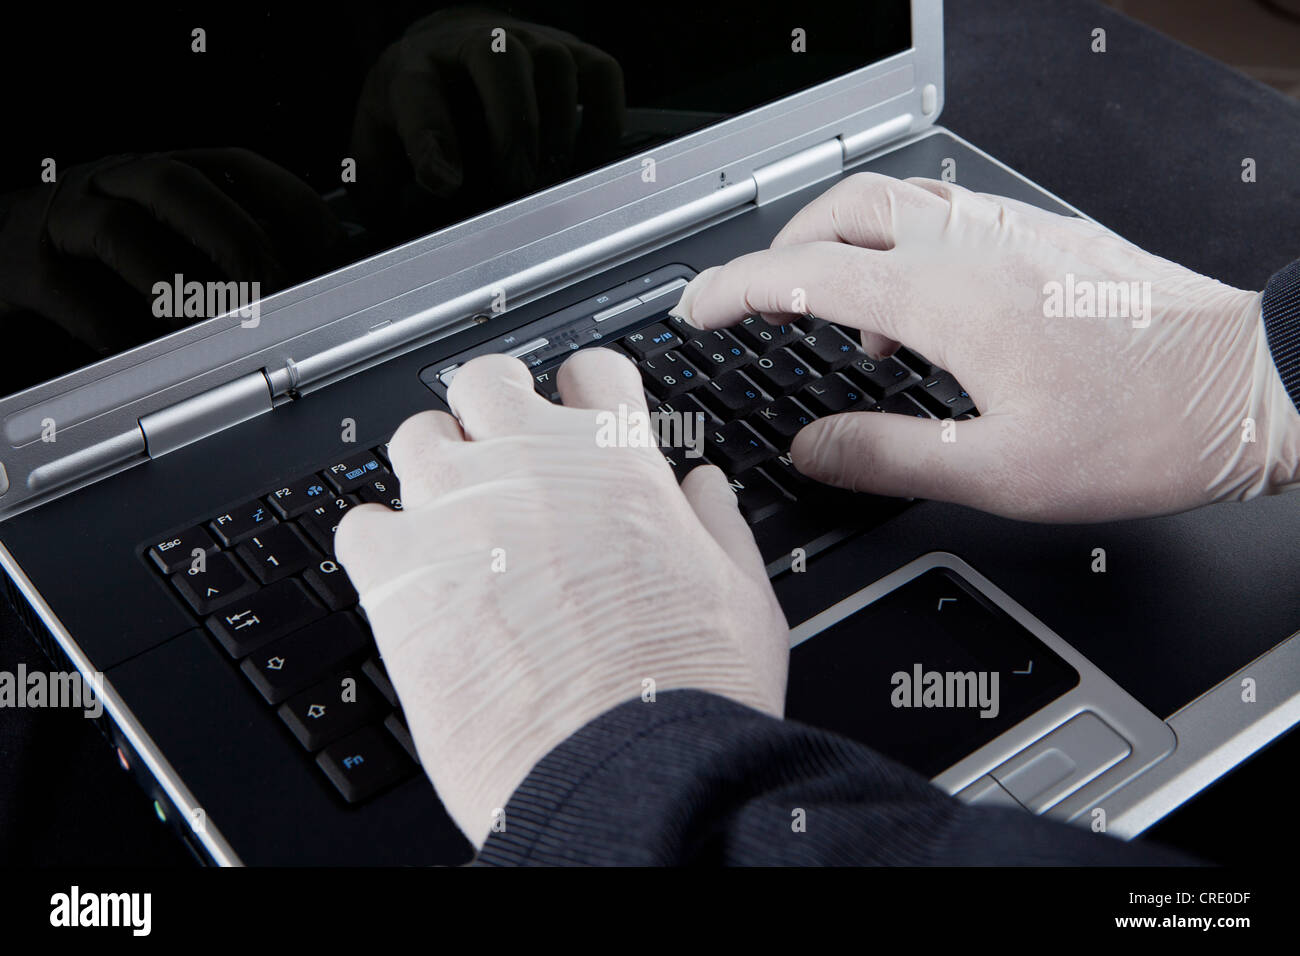 Hacker usando un equipo portátil, usar guantes de látex para no dejar rastros, imagen simbólica de la criminalidad en Internet Foto de stock